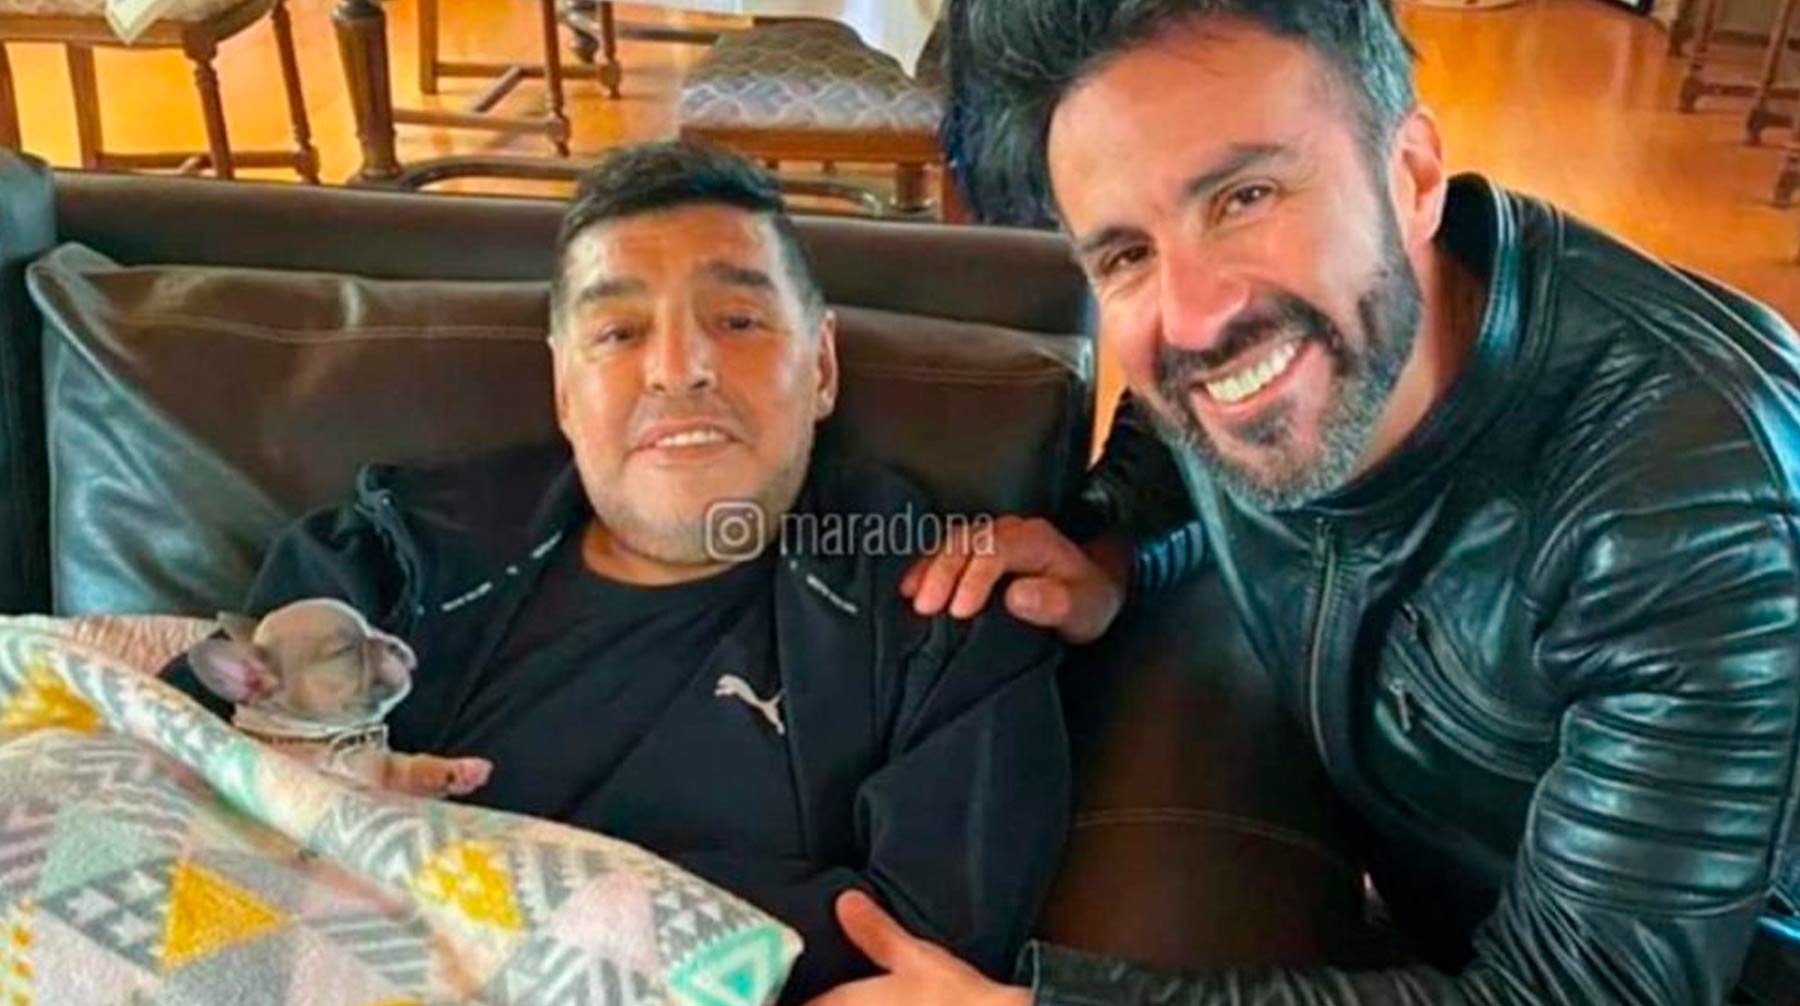 Леопольдо Луке заявил, что сделал все возможное для спасения знаменитого пациента Фото: © instagram.com/maradona